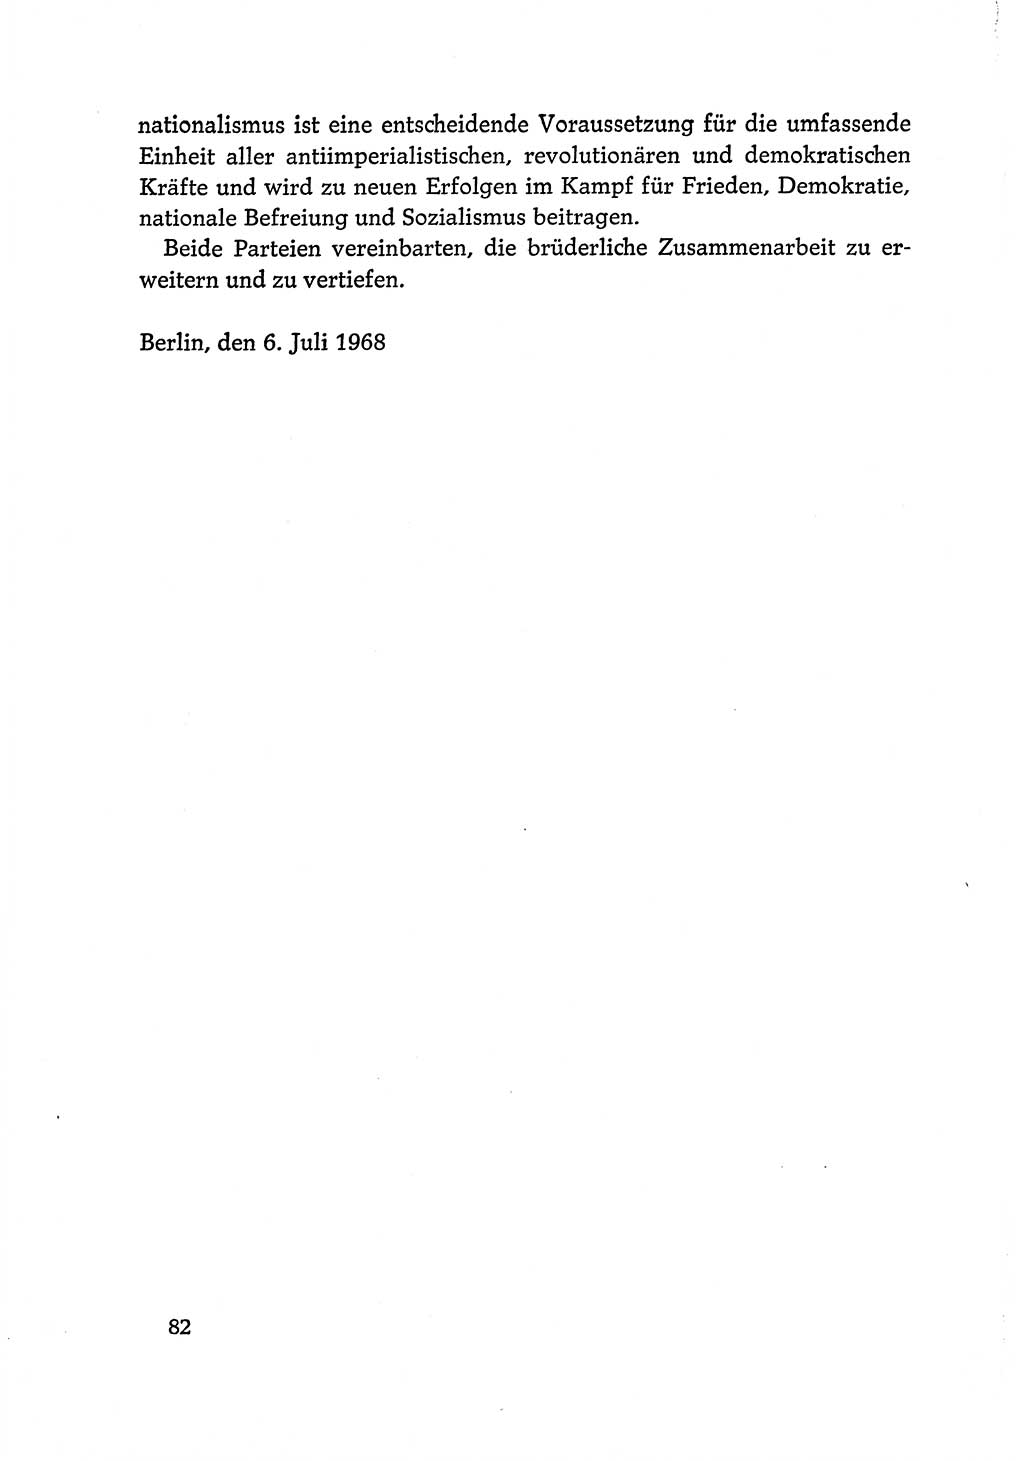 Dokumente der Sozialistischen Einheitspartei Deutschlands (SED) [Deutsche Demokratische Republik (DDR)] 1968-1969, Seite 82 (Dok. SED DDR 1968-1969, S. 82)